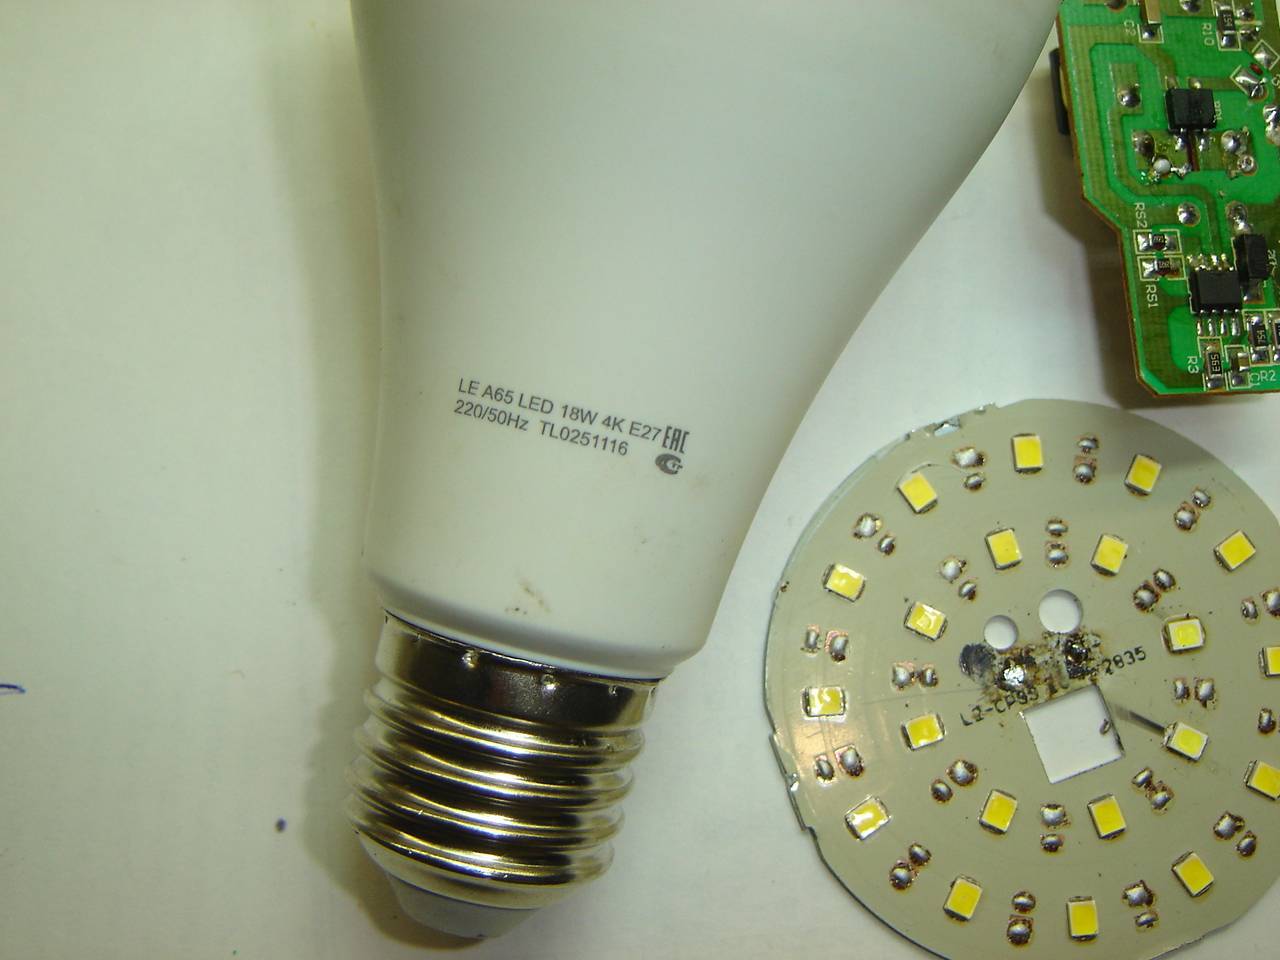 Светодиодная лампа ремонт своими руками на 220в. Светодиодная лампа е27 разборка. Разбор светодиодной лампы e27. Светодиодная лампа е27 150 ватт. Разобрать светодиодную лампу е27 Gauss.